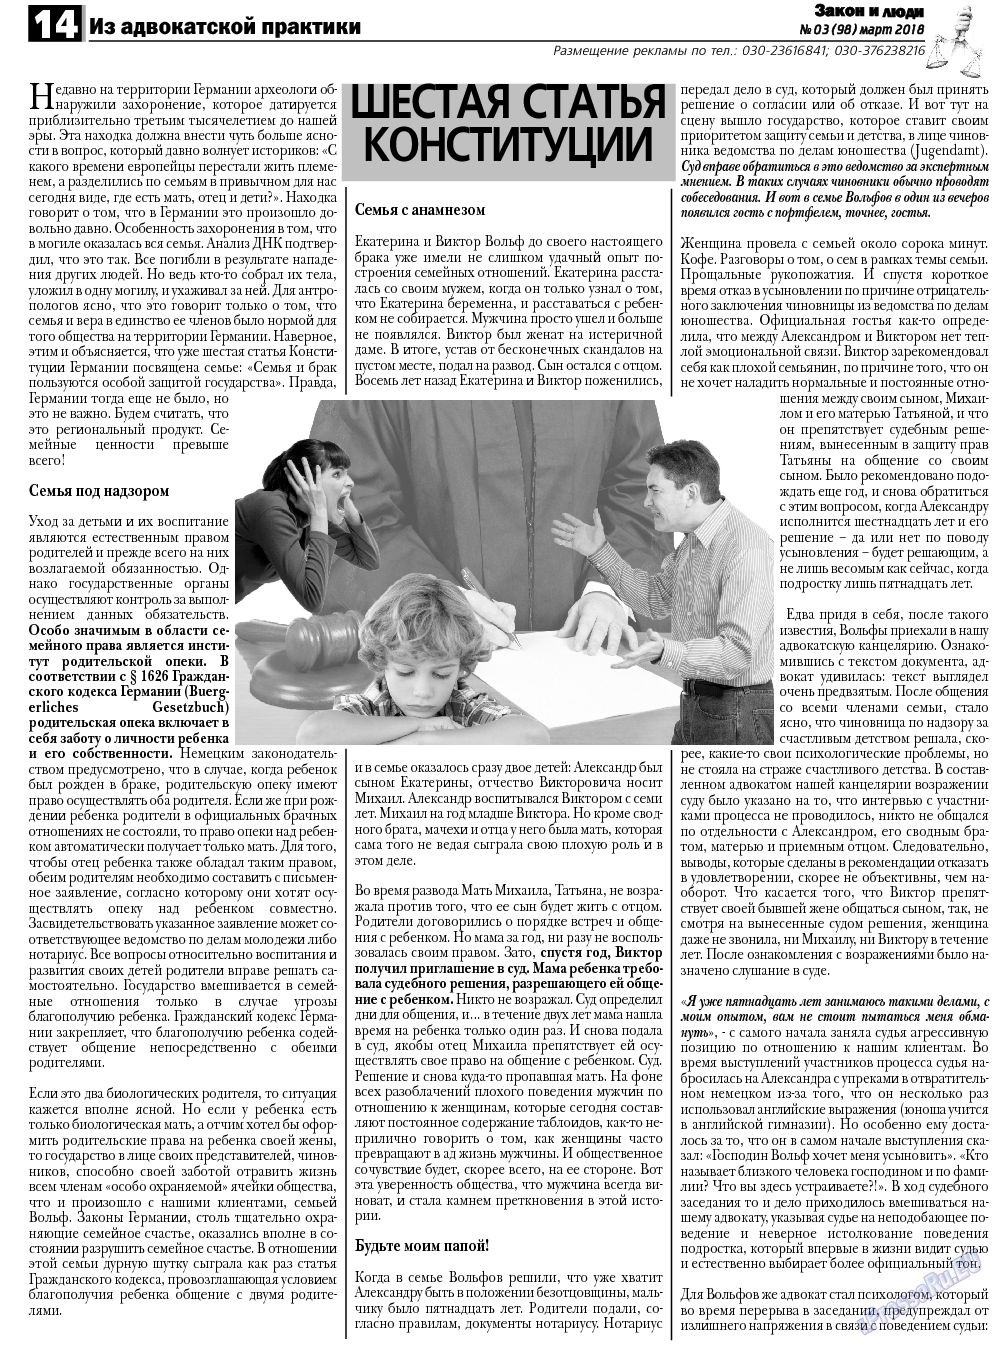 Закон и люди, газета. 2018 №3 стр.14